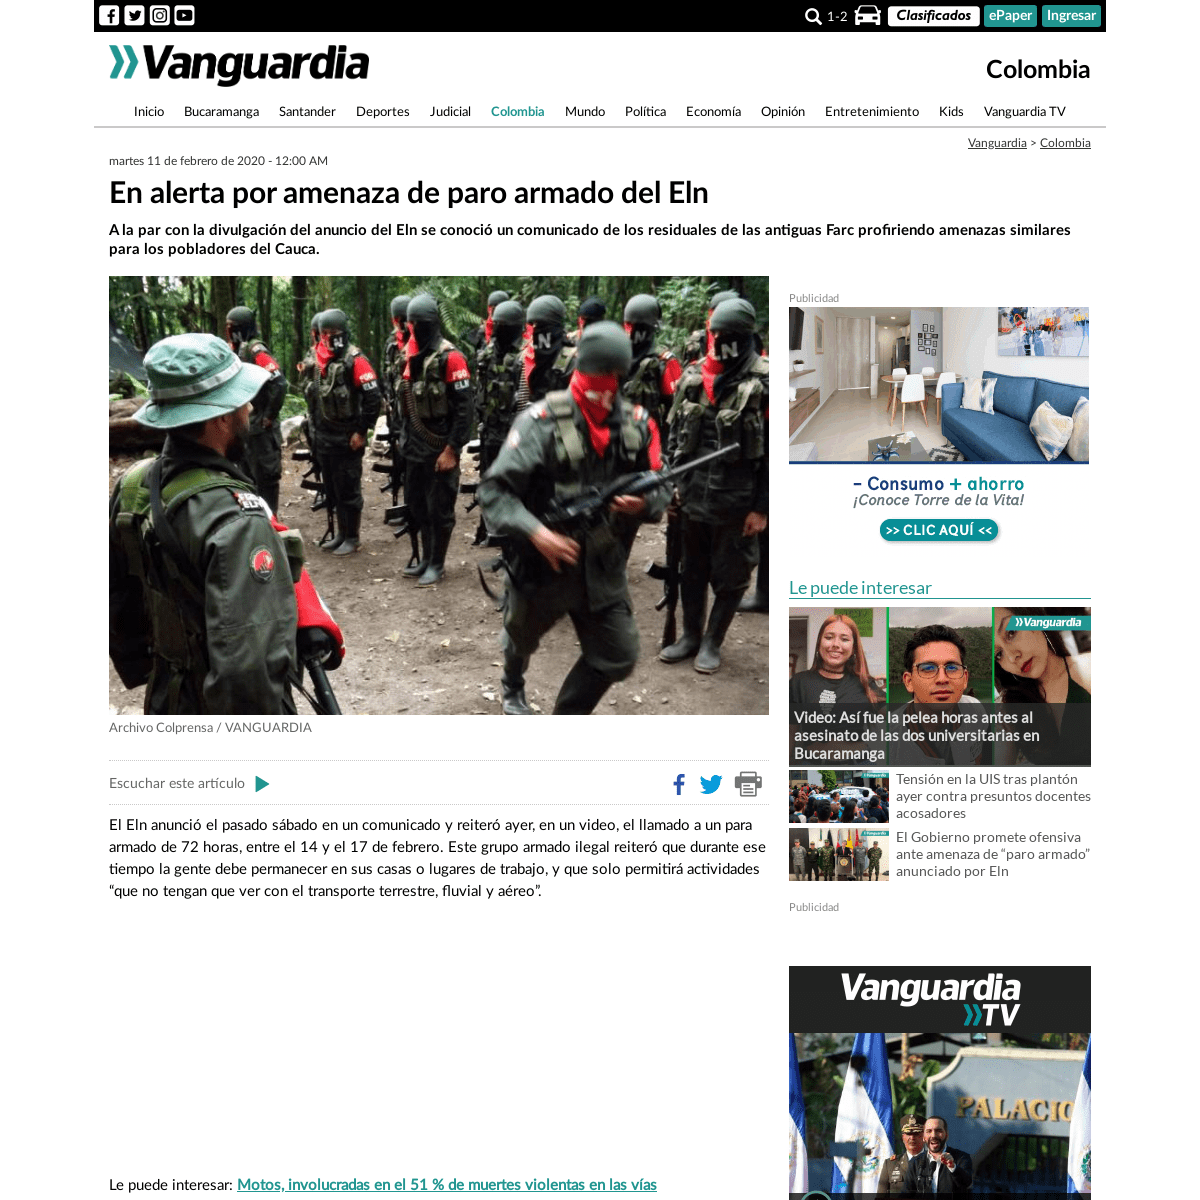 A complete backup of www.vanguardia.com/colombia/en-alerta-por-amenaza-de-paro-armado-del-eln-XY1991246